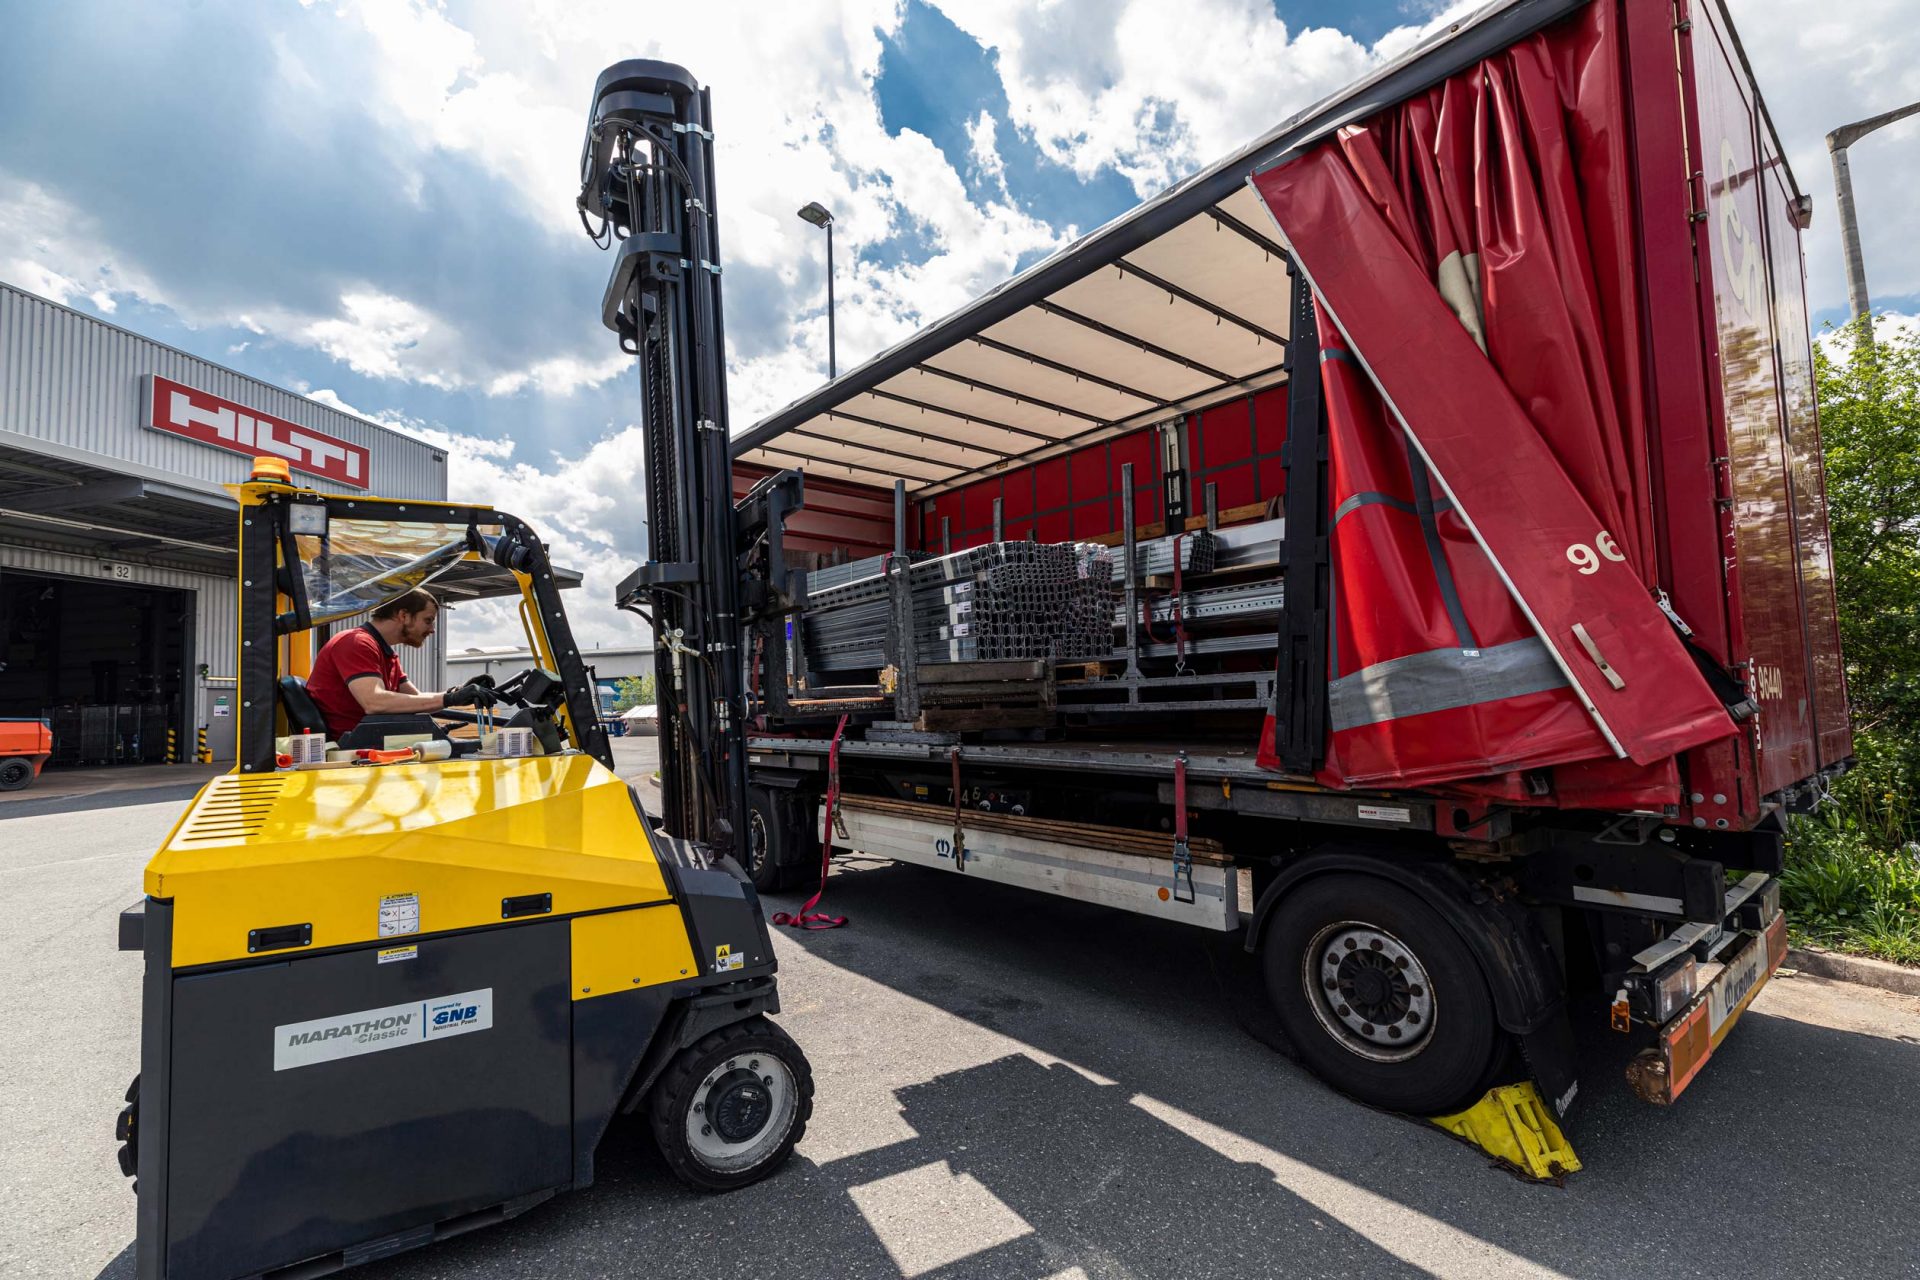 Wózek widłowy Centrum Logistycznego Hilti ładujący wózek Hilti.